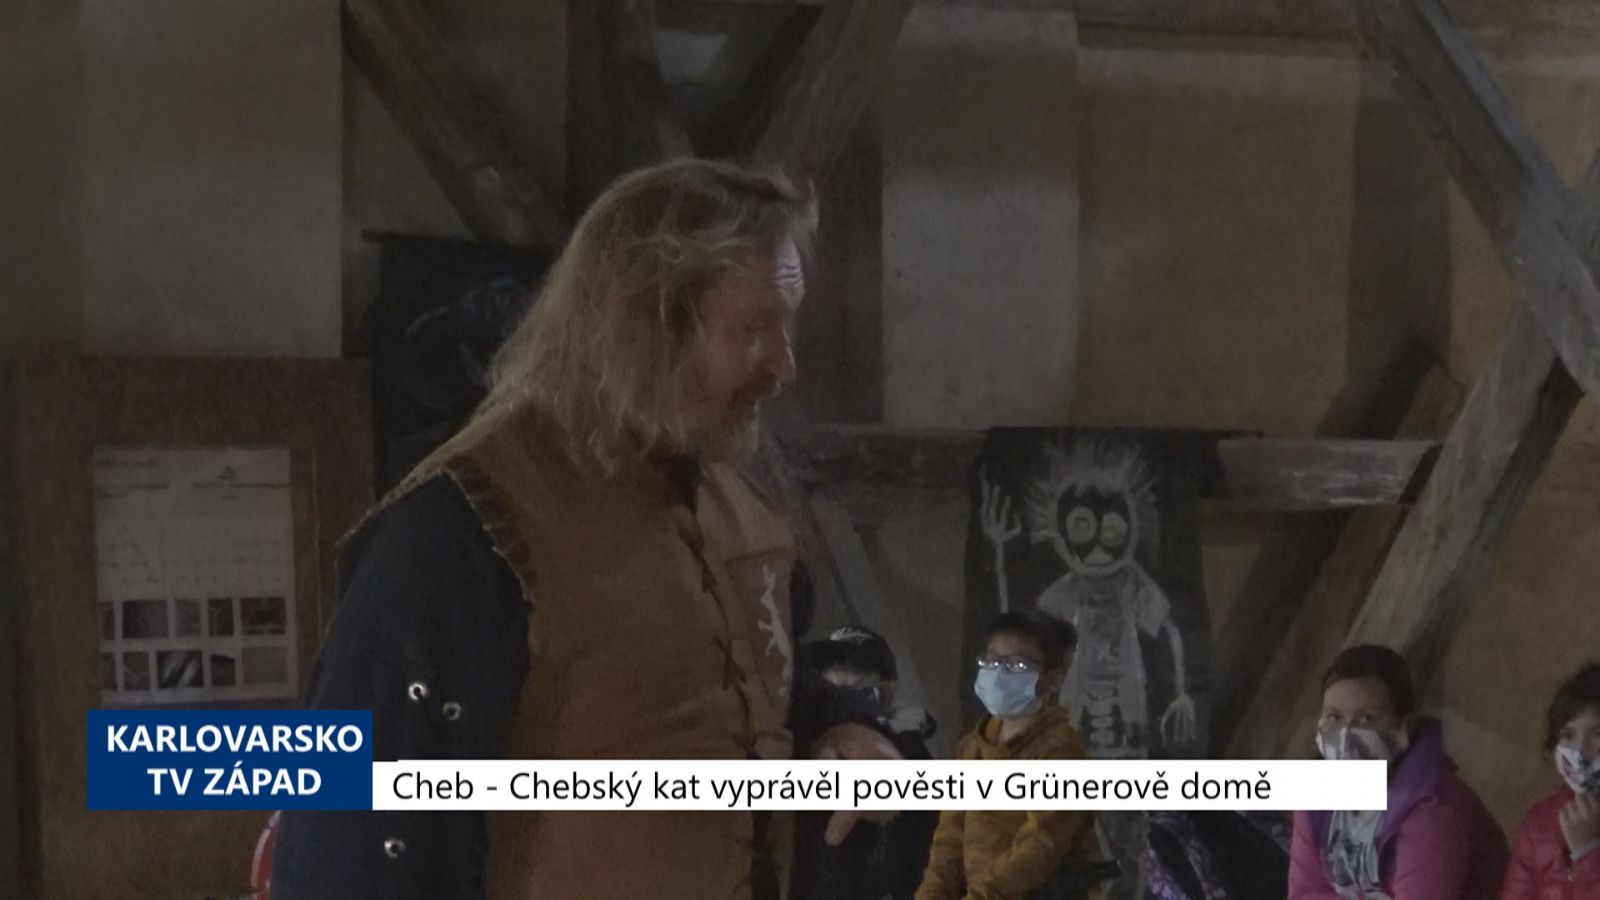 Cheb: Chebský kat vyprávěl pověsti v Grünerově domě (TV Západ)